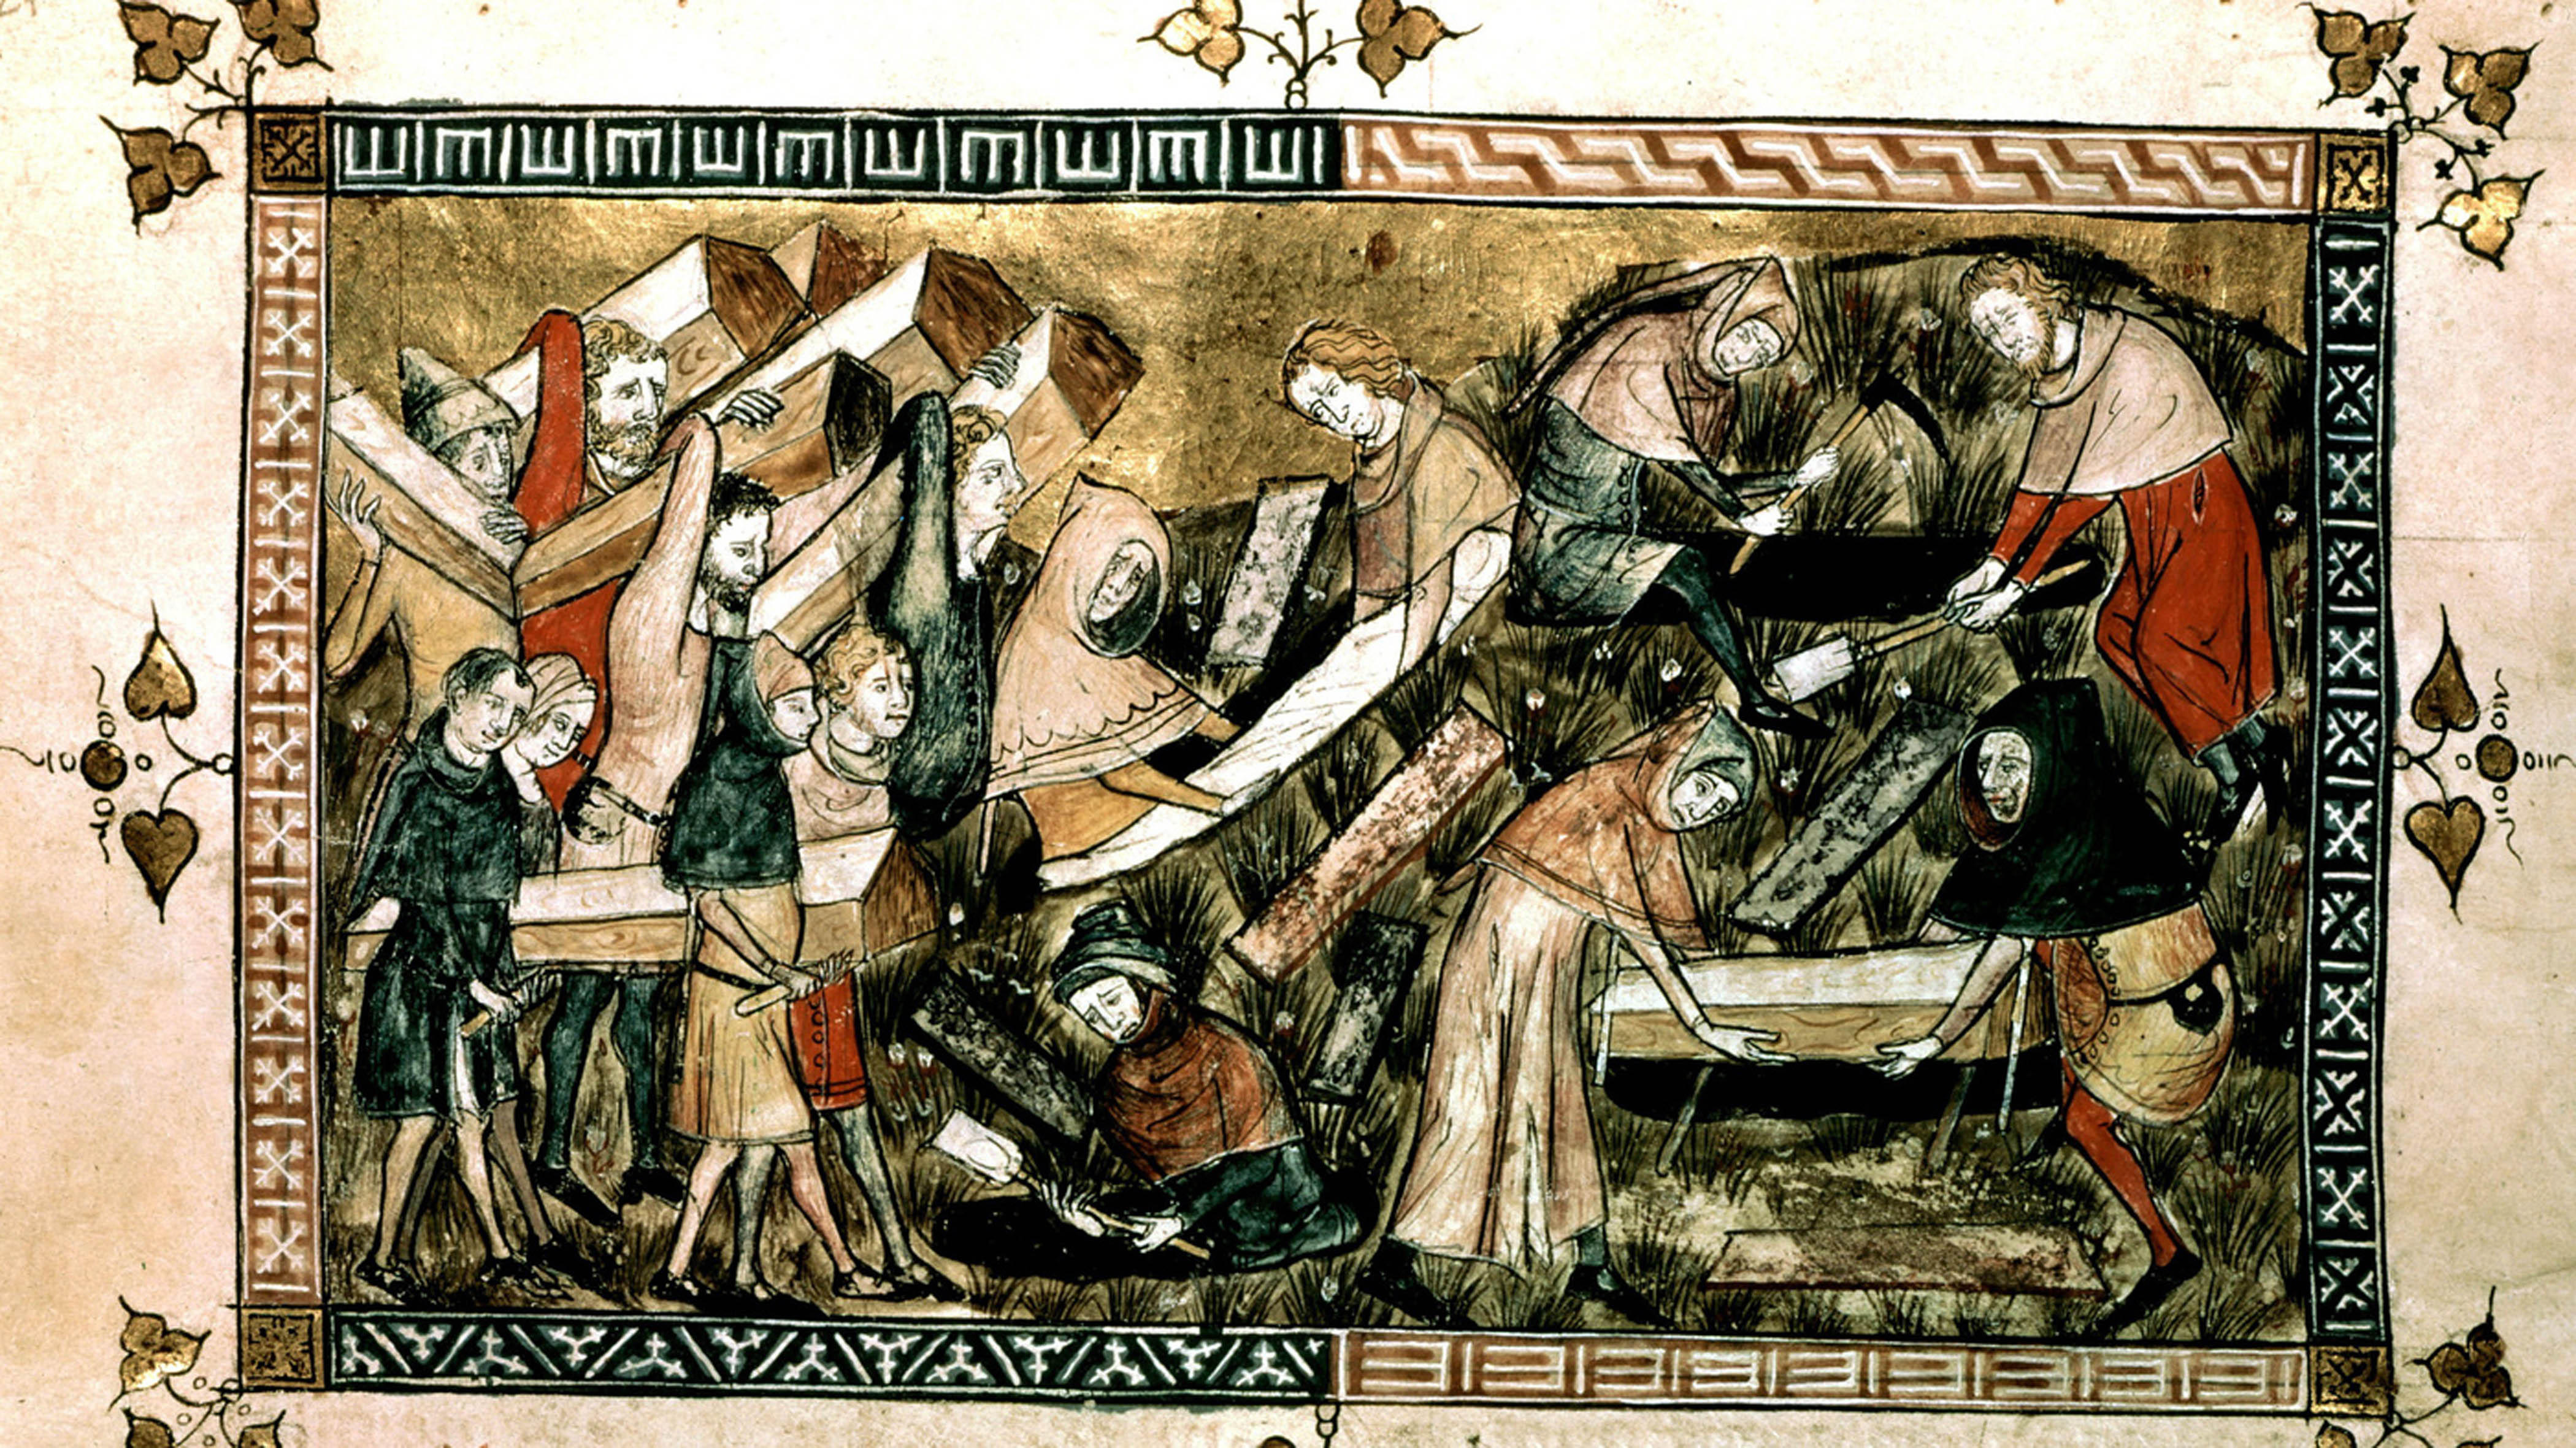 Jeden z pierwszych znanych obrazów zarazy. Wykonany w 1349 r. Przedstawia ludzi niosących trumny zmarłych z powodu czarnej śmierci w Tournai, mieście w dzisiejszej Belgii.